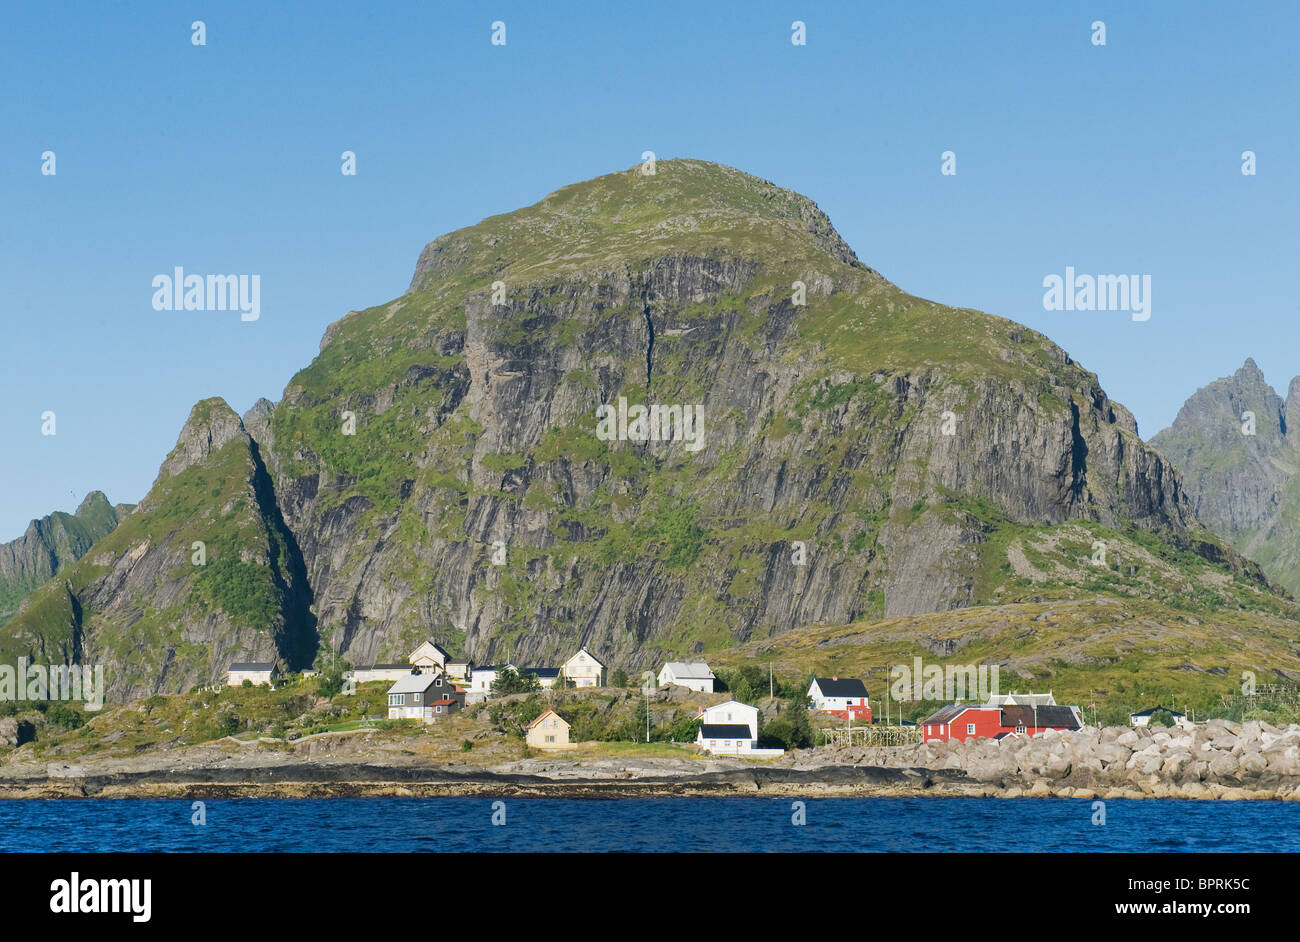 Å, villaggio di pescatori sull isola di Moskenes, isole Lofoten in Norvegia Foto Stock